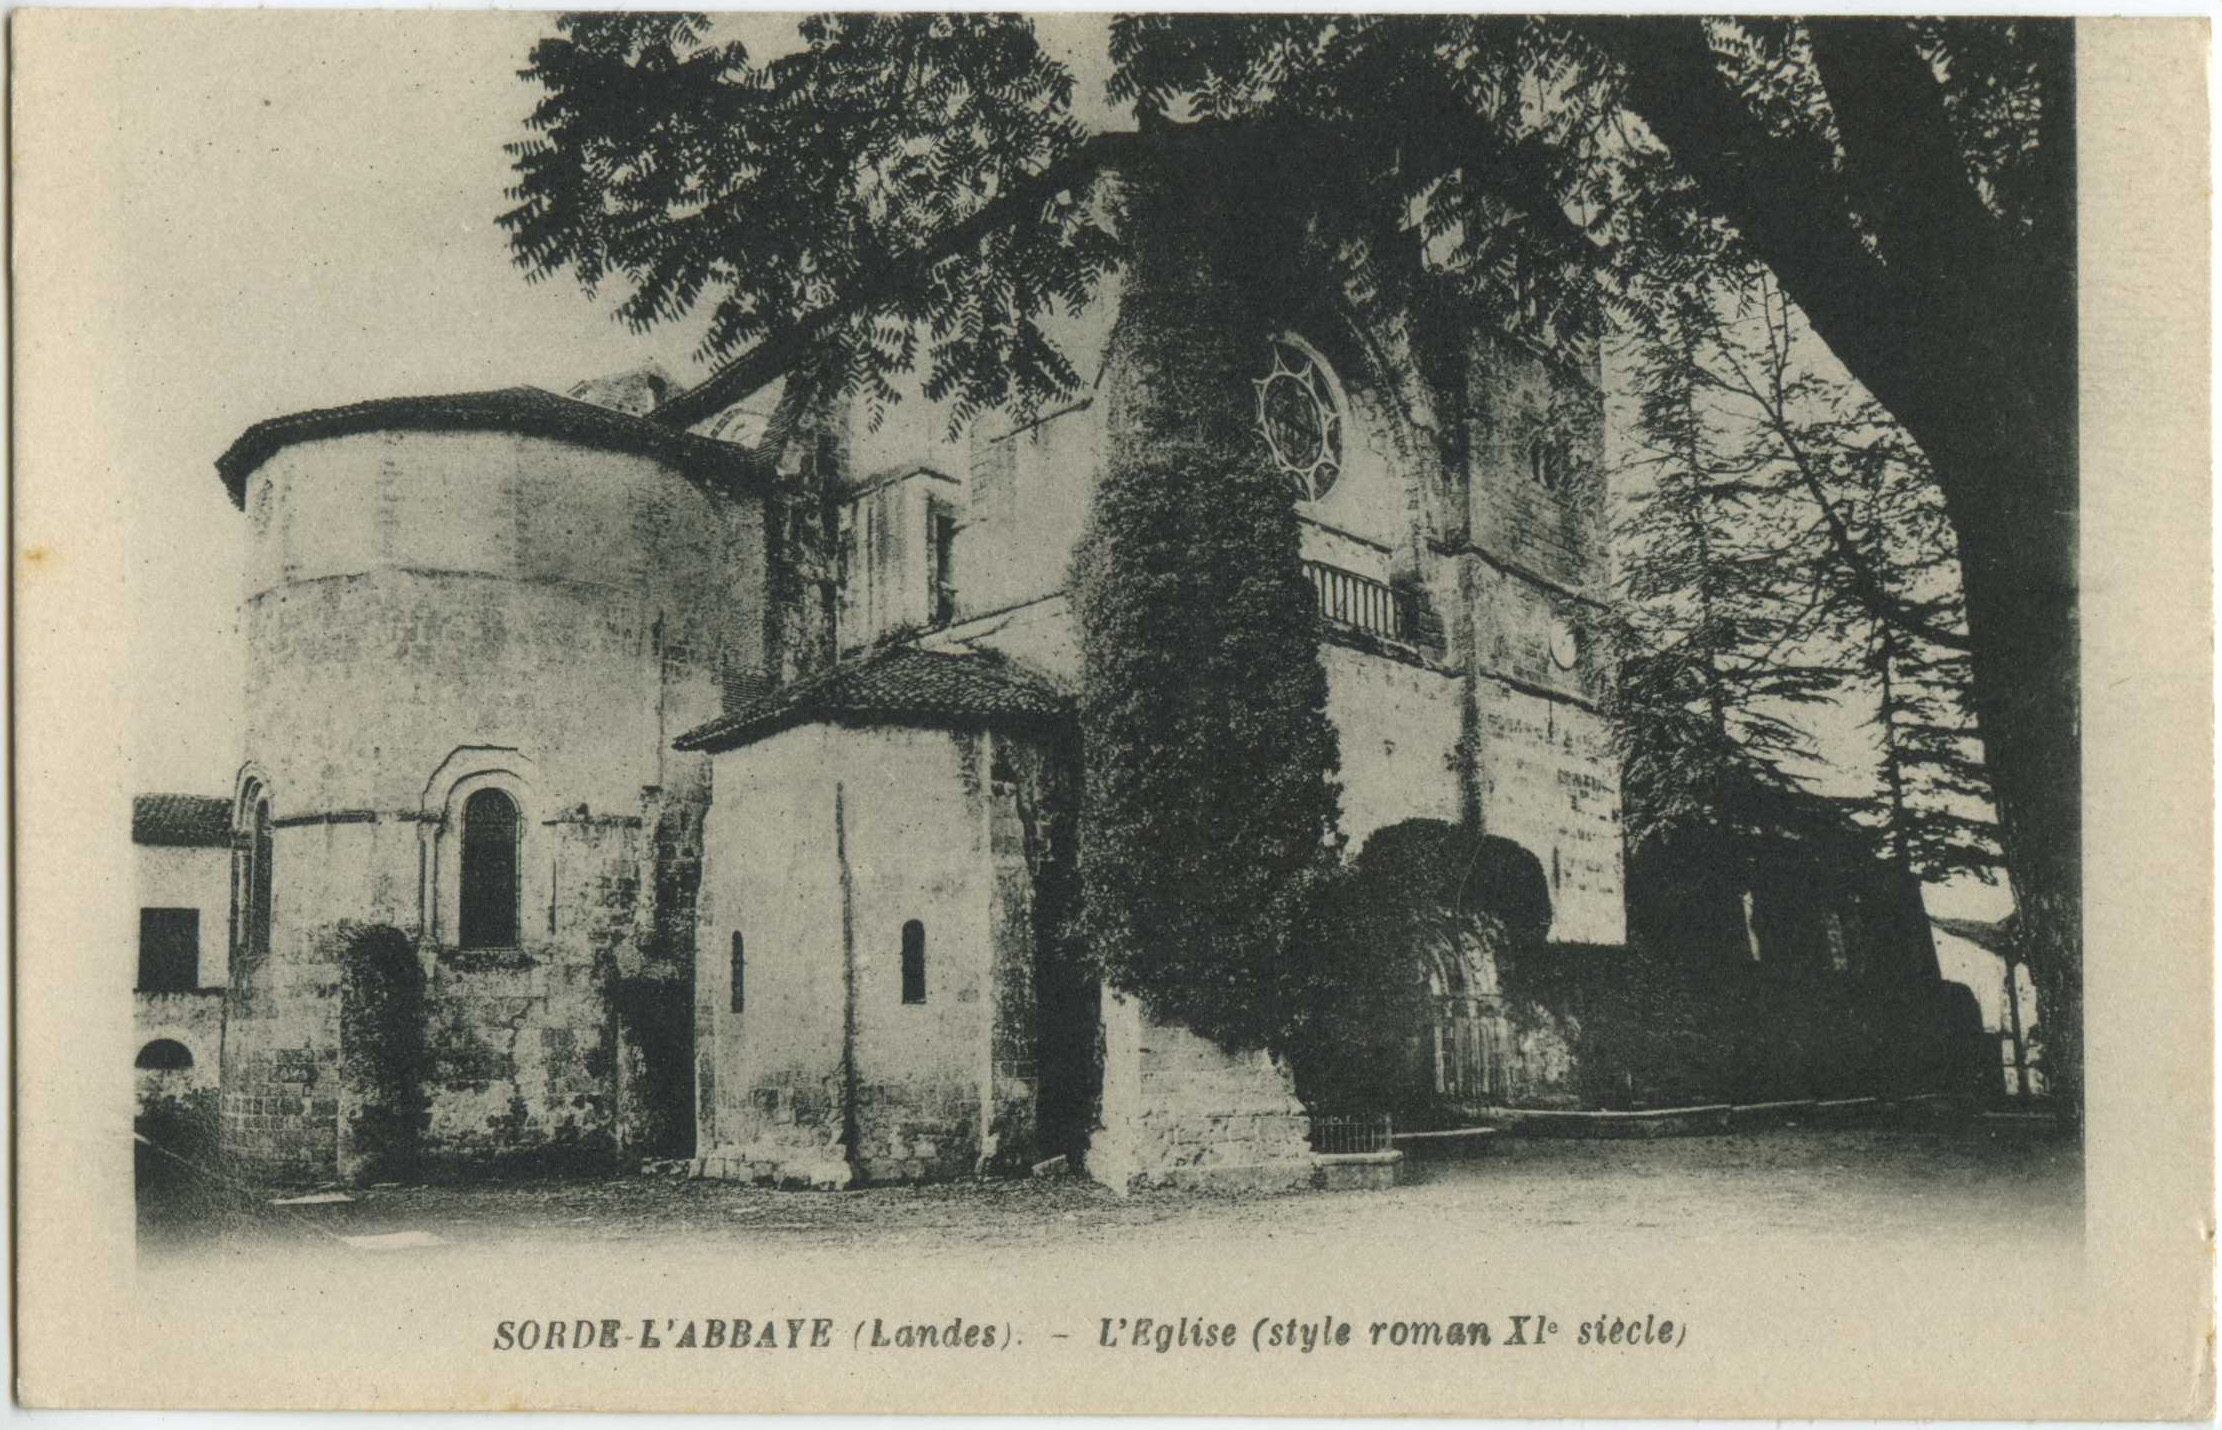 Sorde-l'Abbaye - L'Eglise (style roman XI<sup>e</sup> siècle)